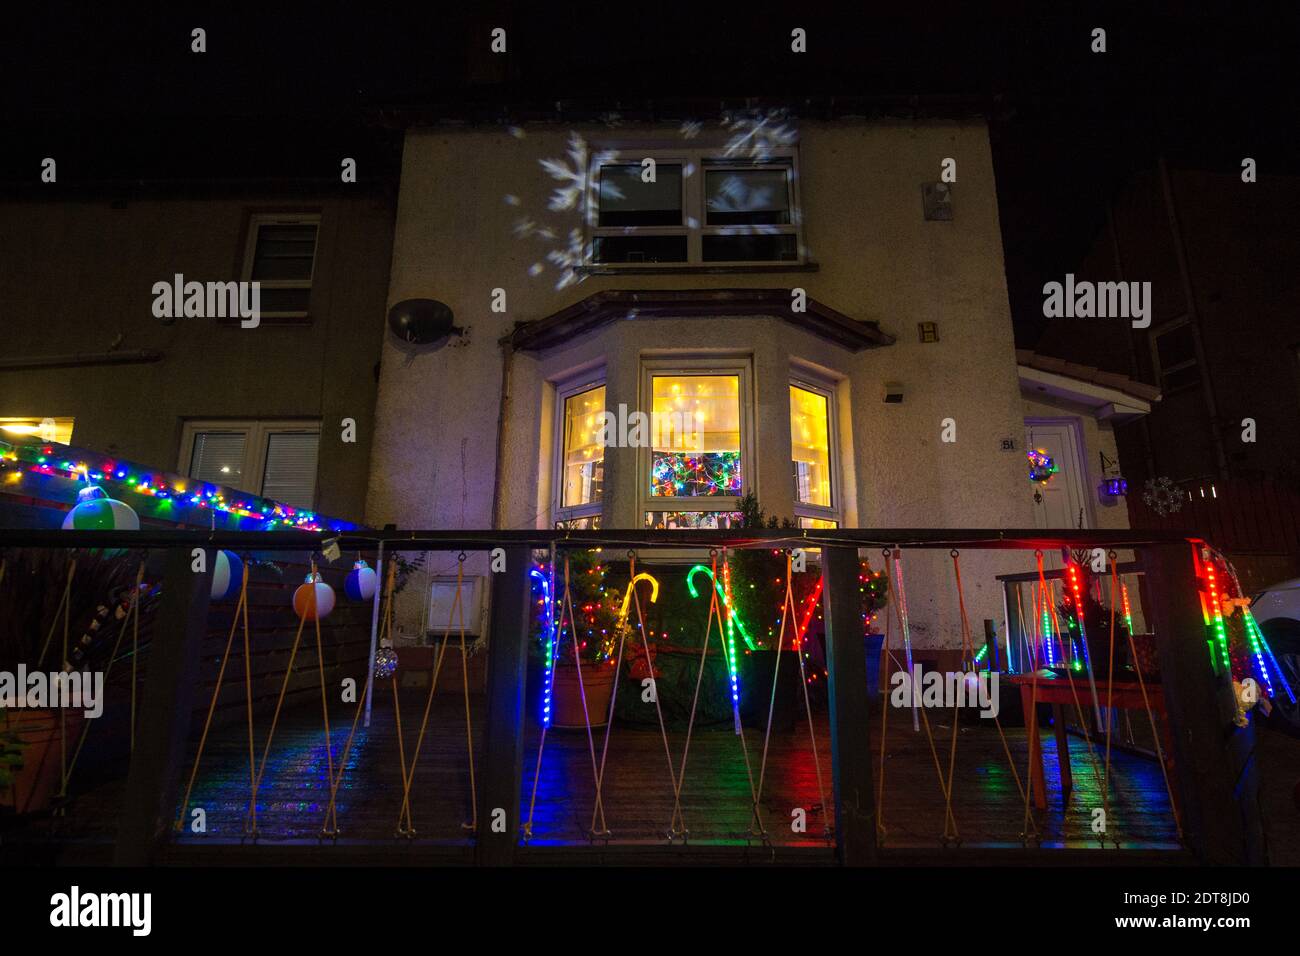 Glasgow, Escocia, Reino Unido. 21 de diciembre de 2020. En la foto: Bastones de caramelo y copos de nieve. Los residentes de Balarnock pusieron un espectáculo de luces de Navidad fantástico. Los residentes de Balarnock tienen un gran sentido de la comunidad, y les encanta difundir la alegría de Navidad poniendo en una exhibición festiva que difunde el mensaje de Navidad. En un año en el que COVID19 ha dominado los titulares durante casi un año, a la gente le gusta ver luces coloridas y disfrutar de la temporada festiva. Crédito: Colin Fisher/Alamy Live News Foto de stock